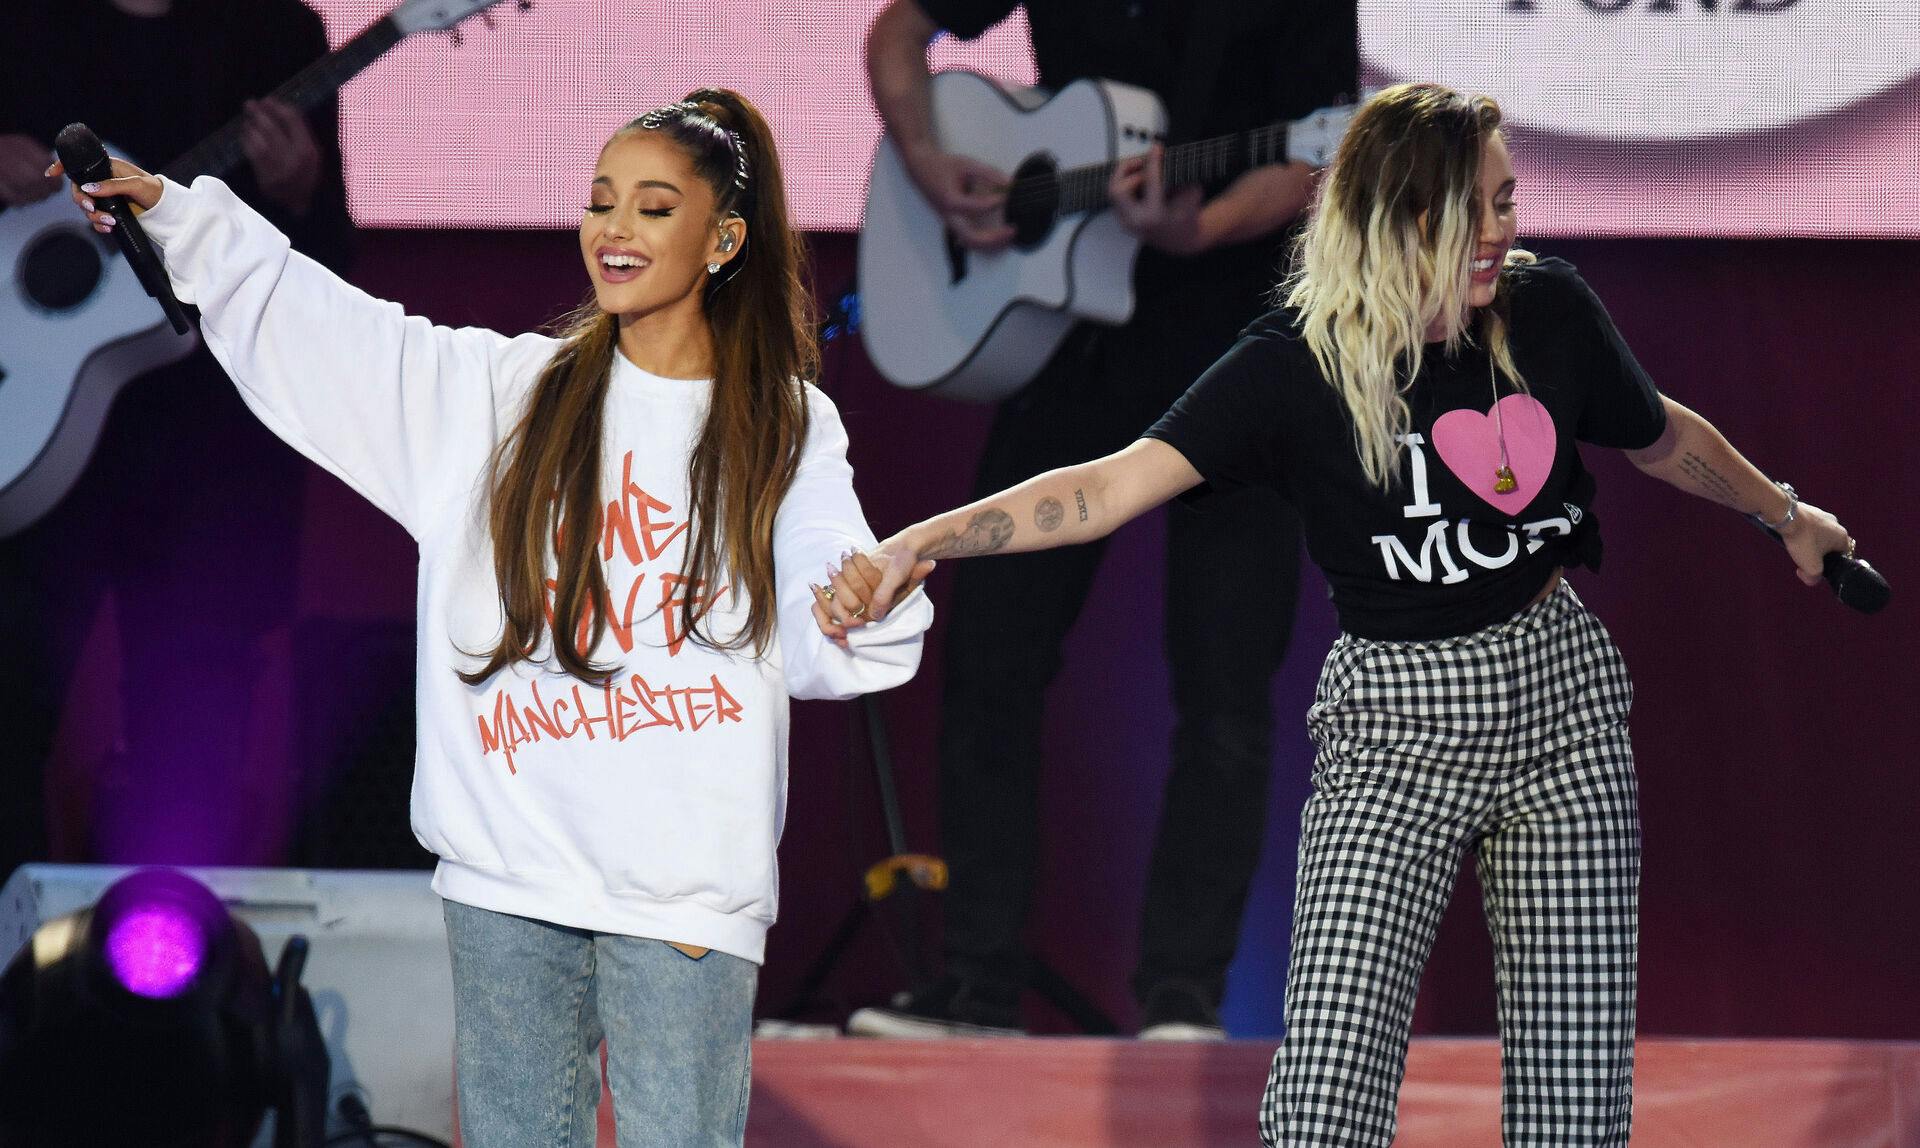 Efter det forfærdelige bombeangreb under en Ariana Grande-koncert i 2017 afholdt sangerinden en støttekoncert, hvor hun samlede penge ind til ofrenes familier. 